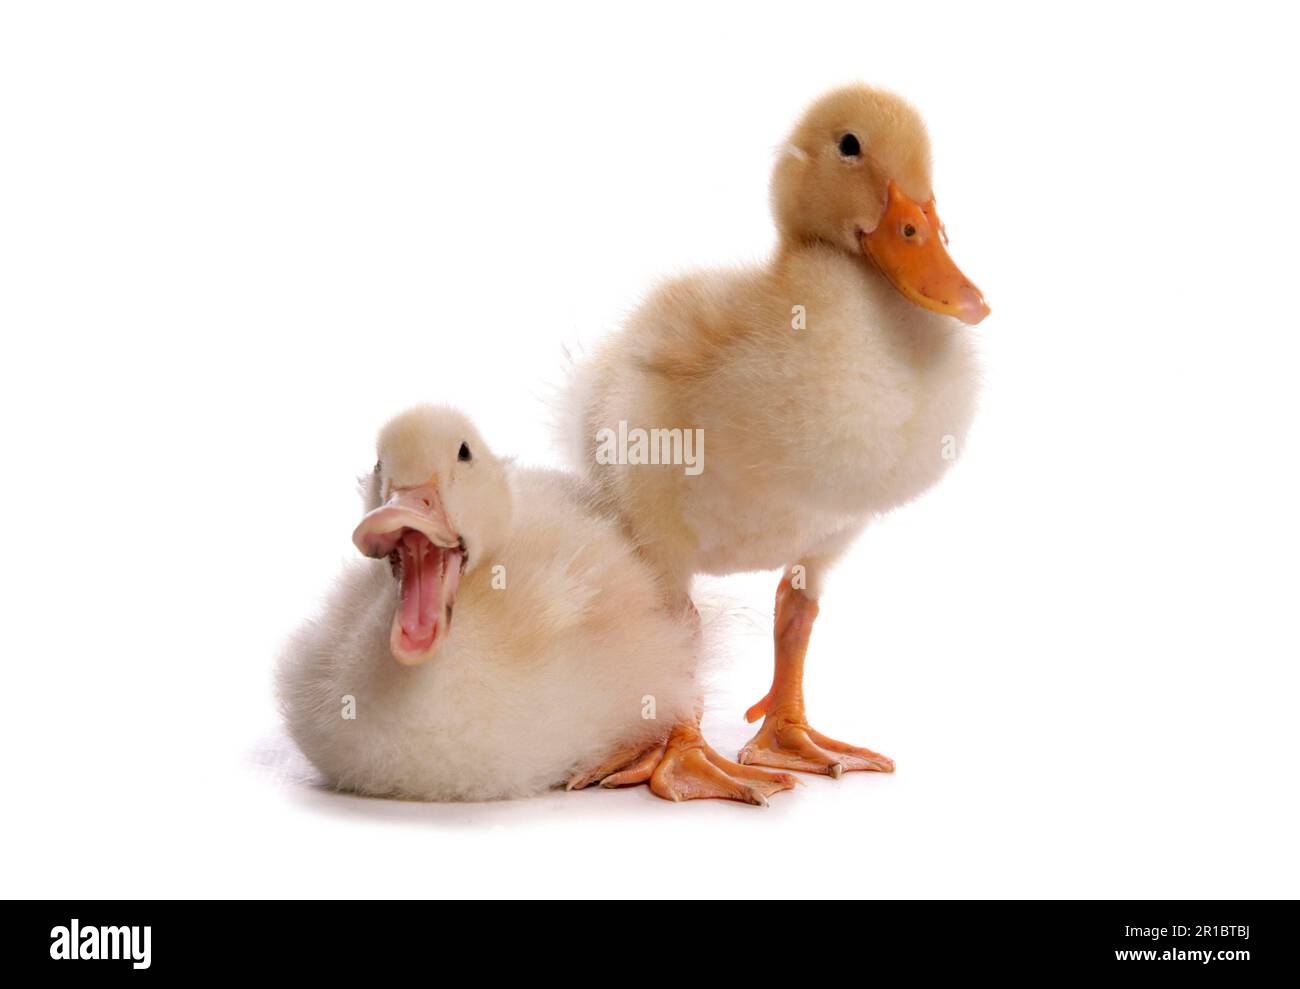 Aylesbury Duck, Aylesbury Duck, Aylesbury Ducks, reinrassig, Haustiere, Nutztiere, Geflügel, Enten, Gänsevögel, Tiere, Vögel, Hausenten, Hausenten Stockfoto